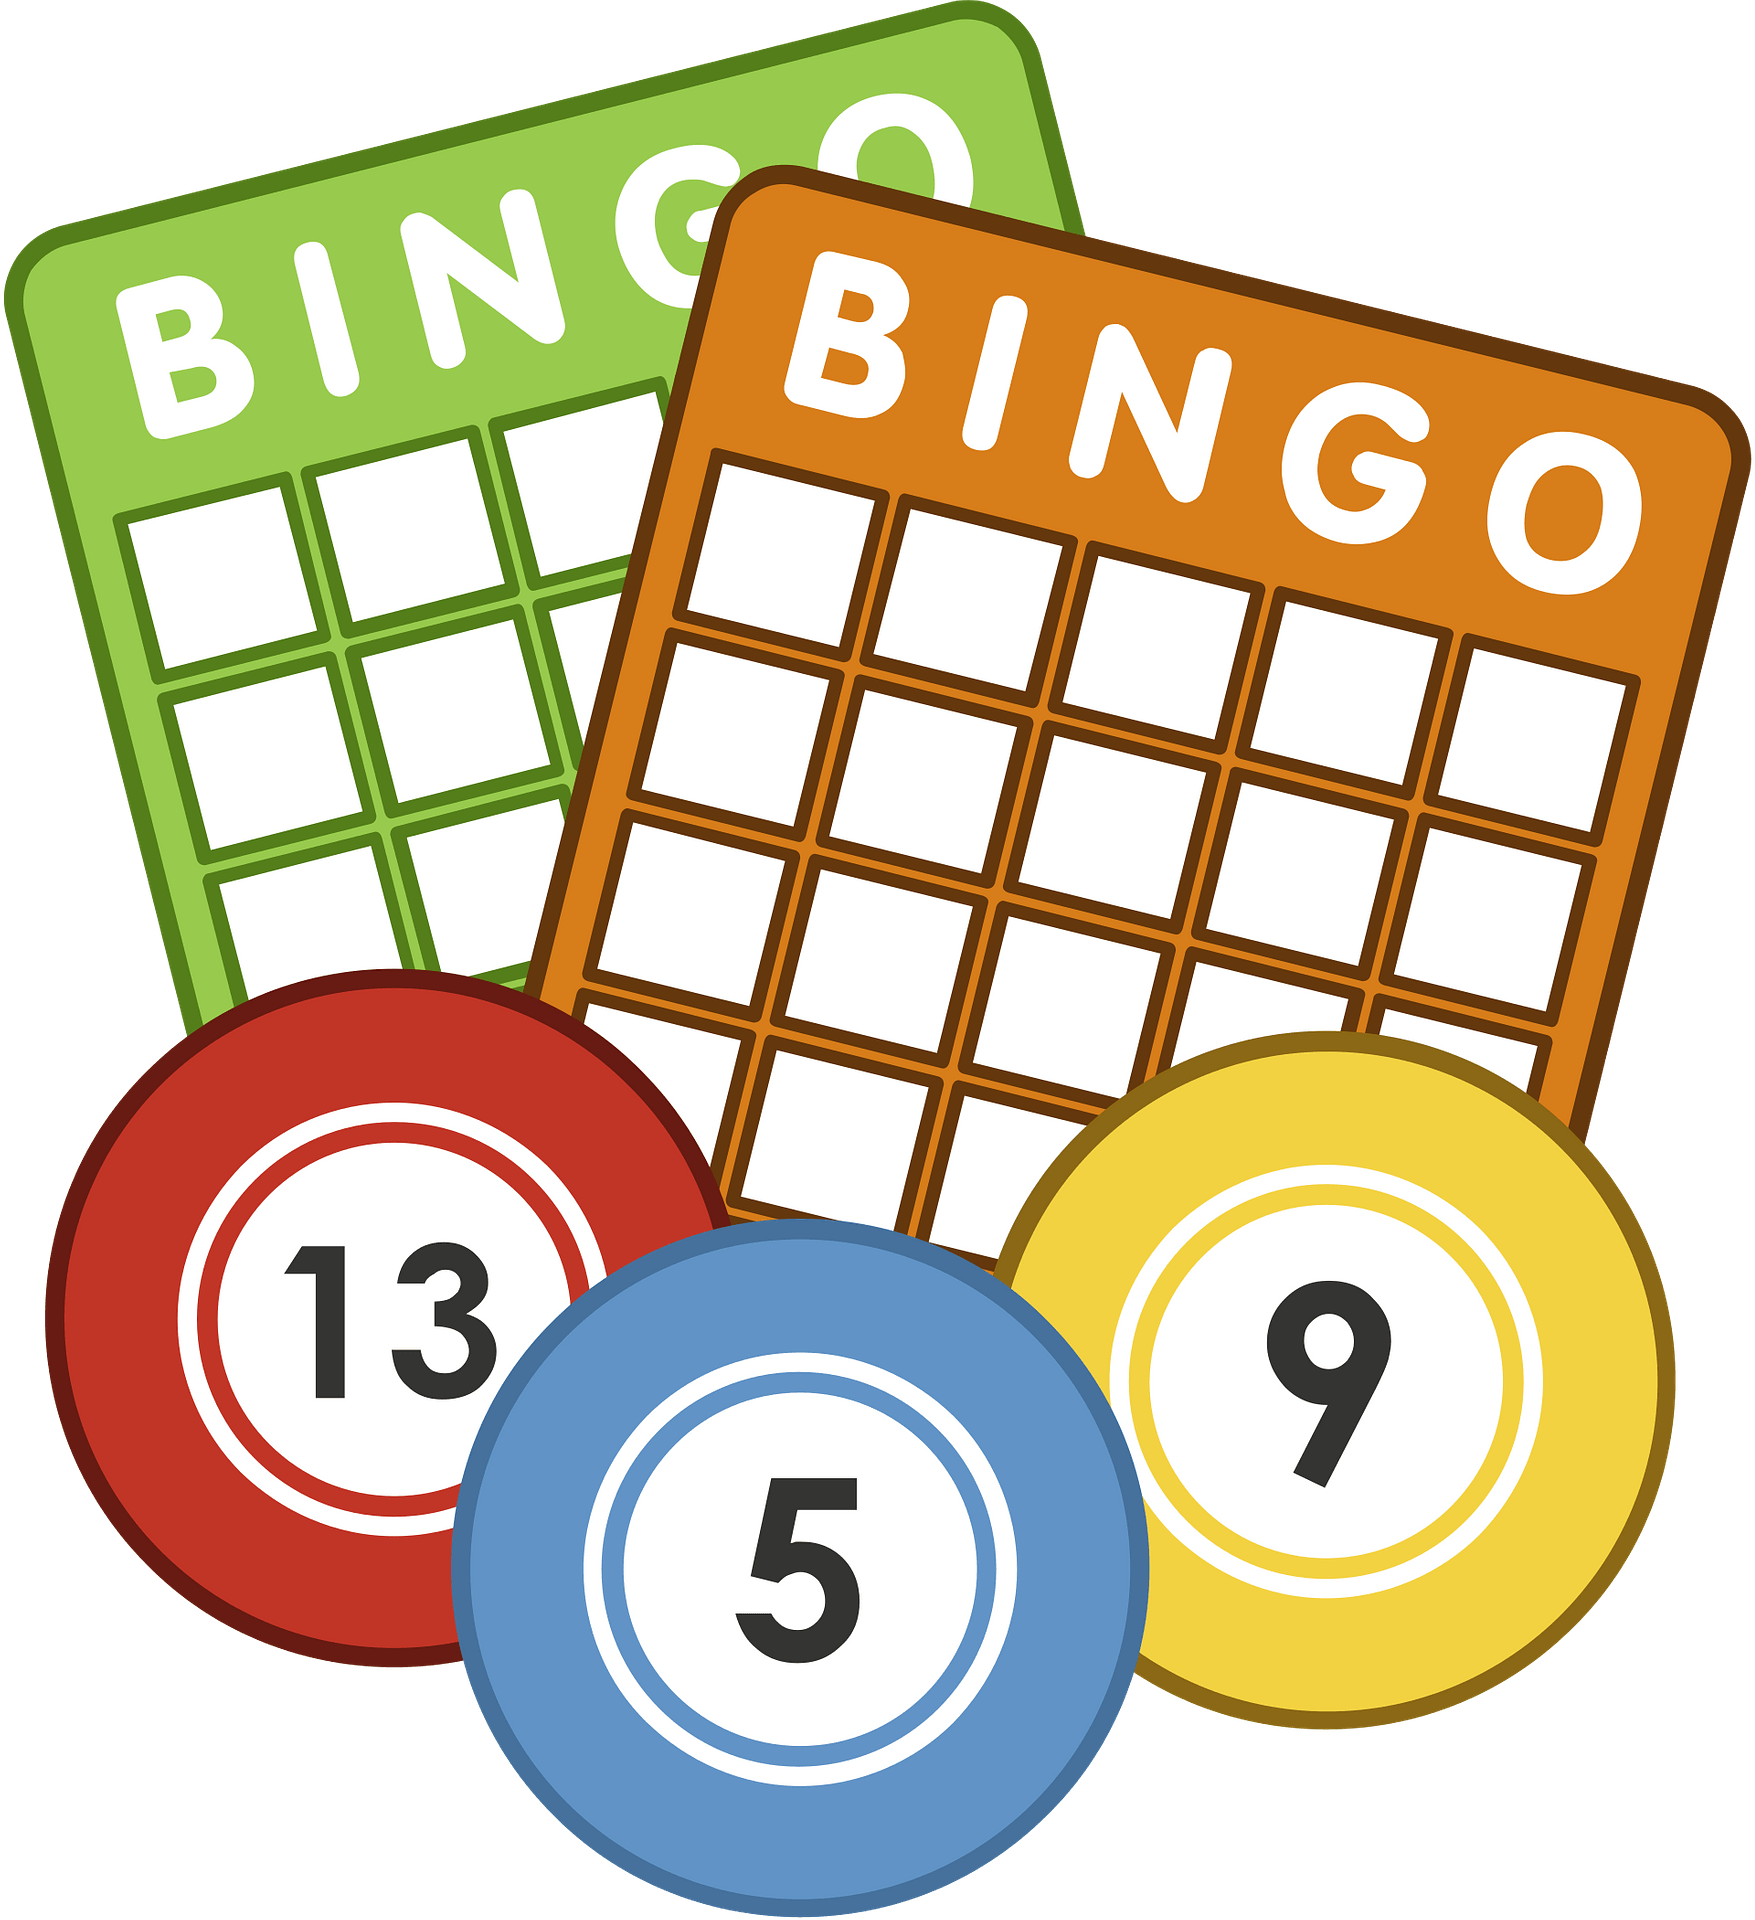 Hall Rental, Bingo Schedule